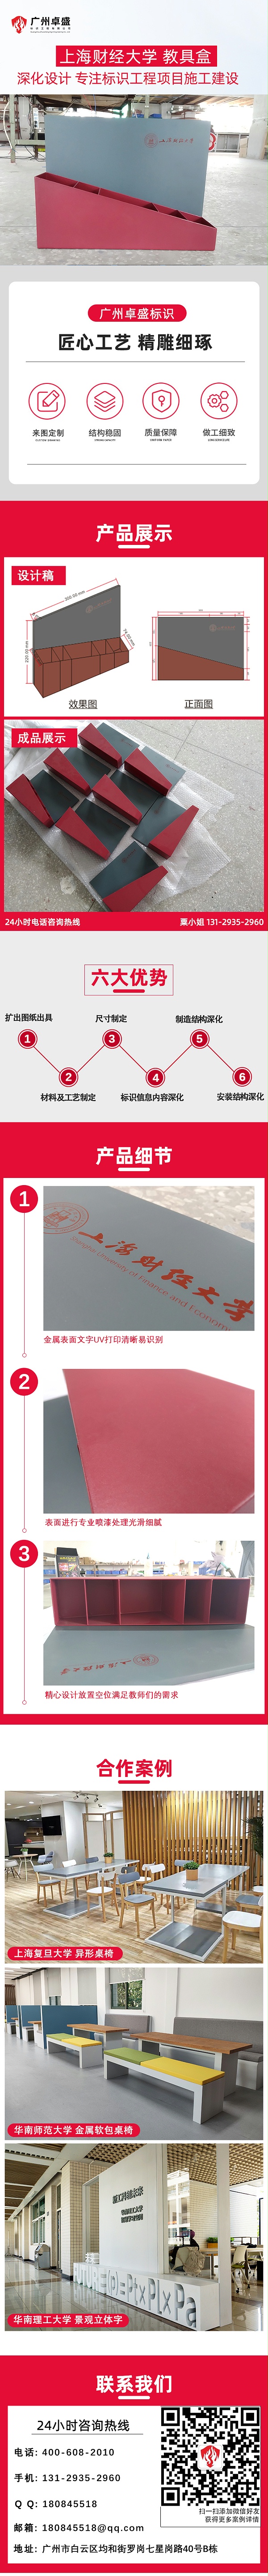 上海财经大学 教具盒